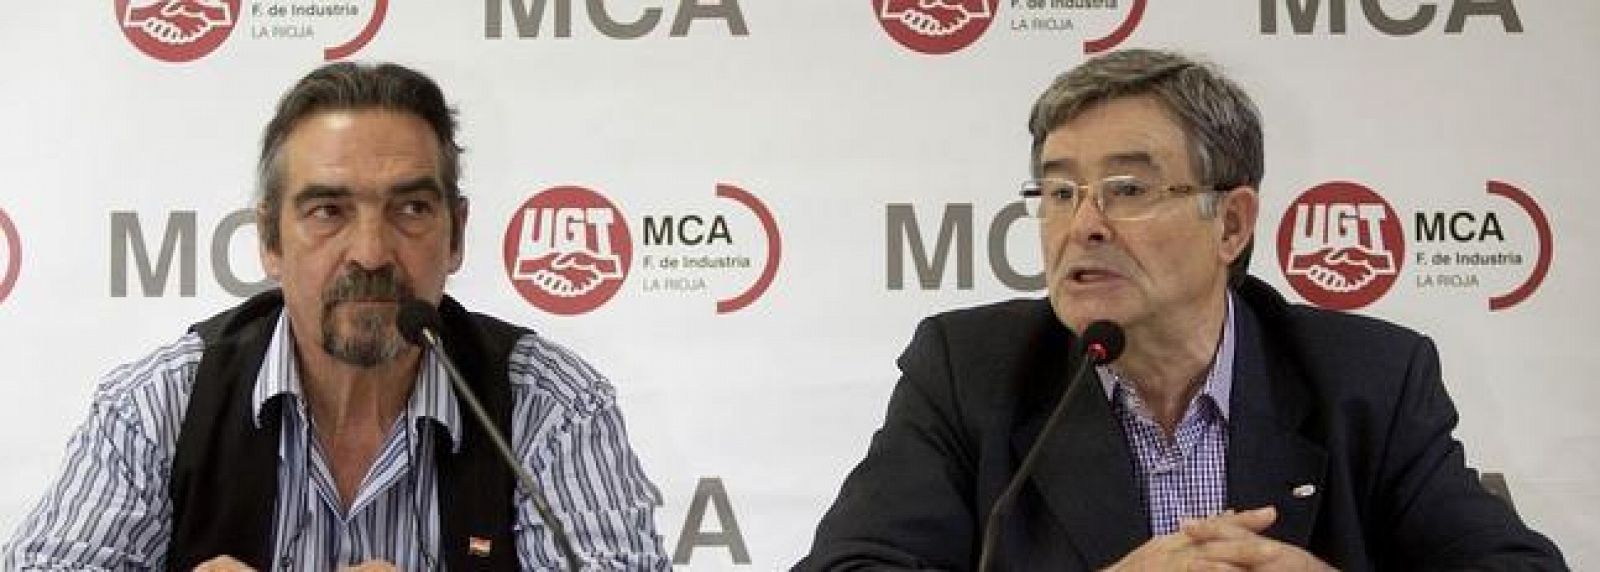 Manuel Fernández "Lito", dirigente de la Federación de Metal, Construcción y Afines de UGT